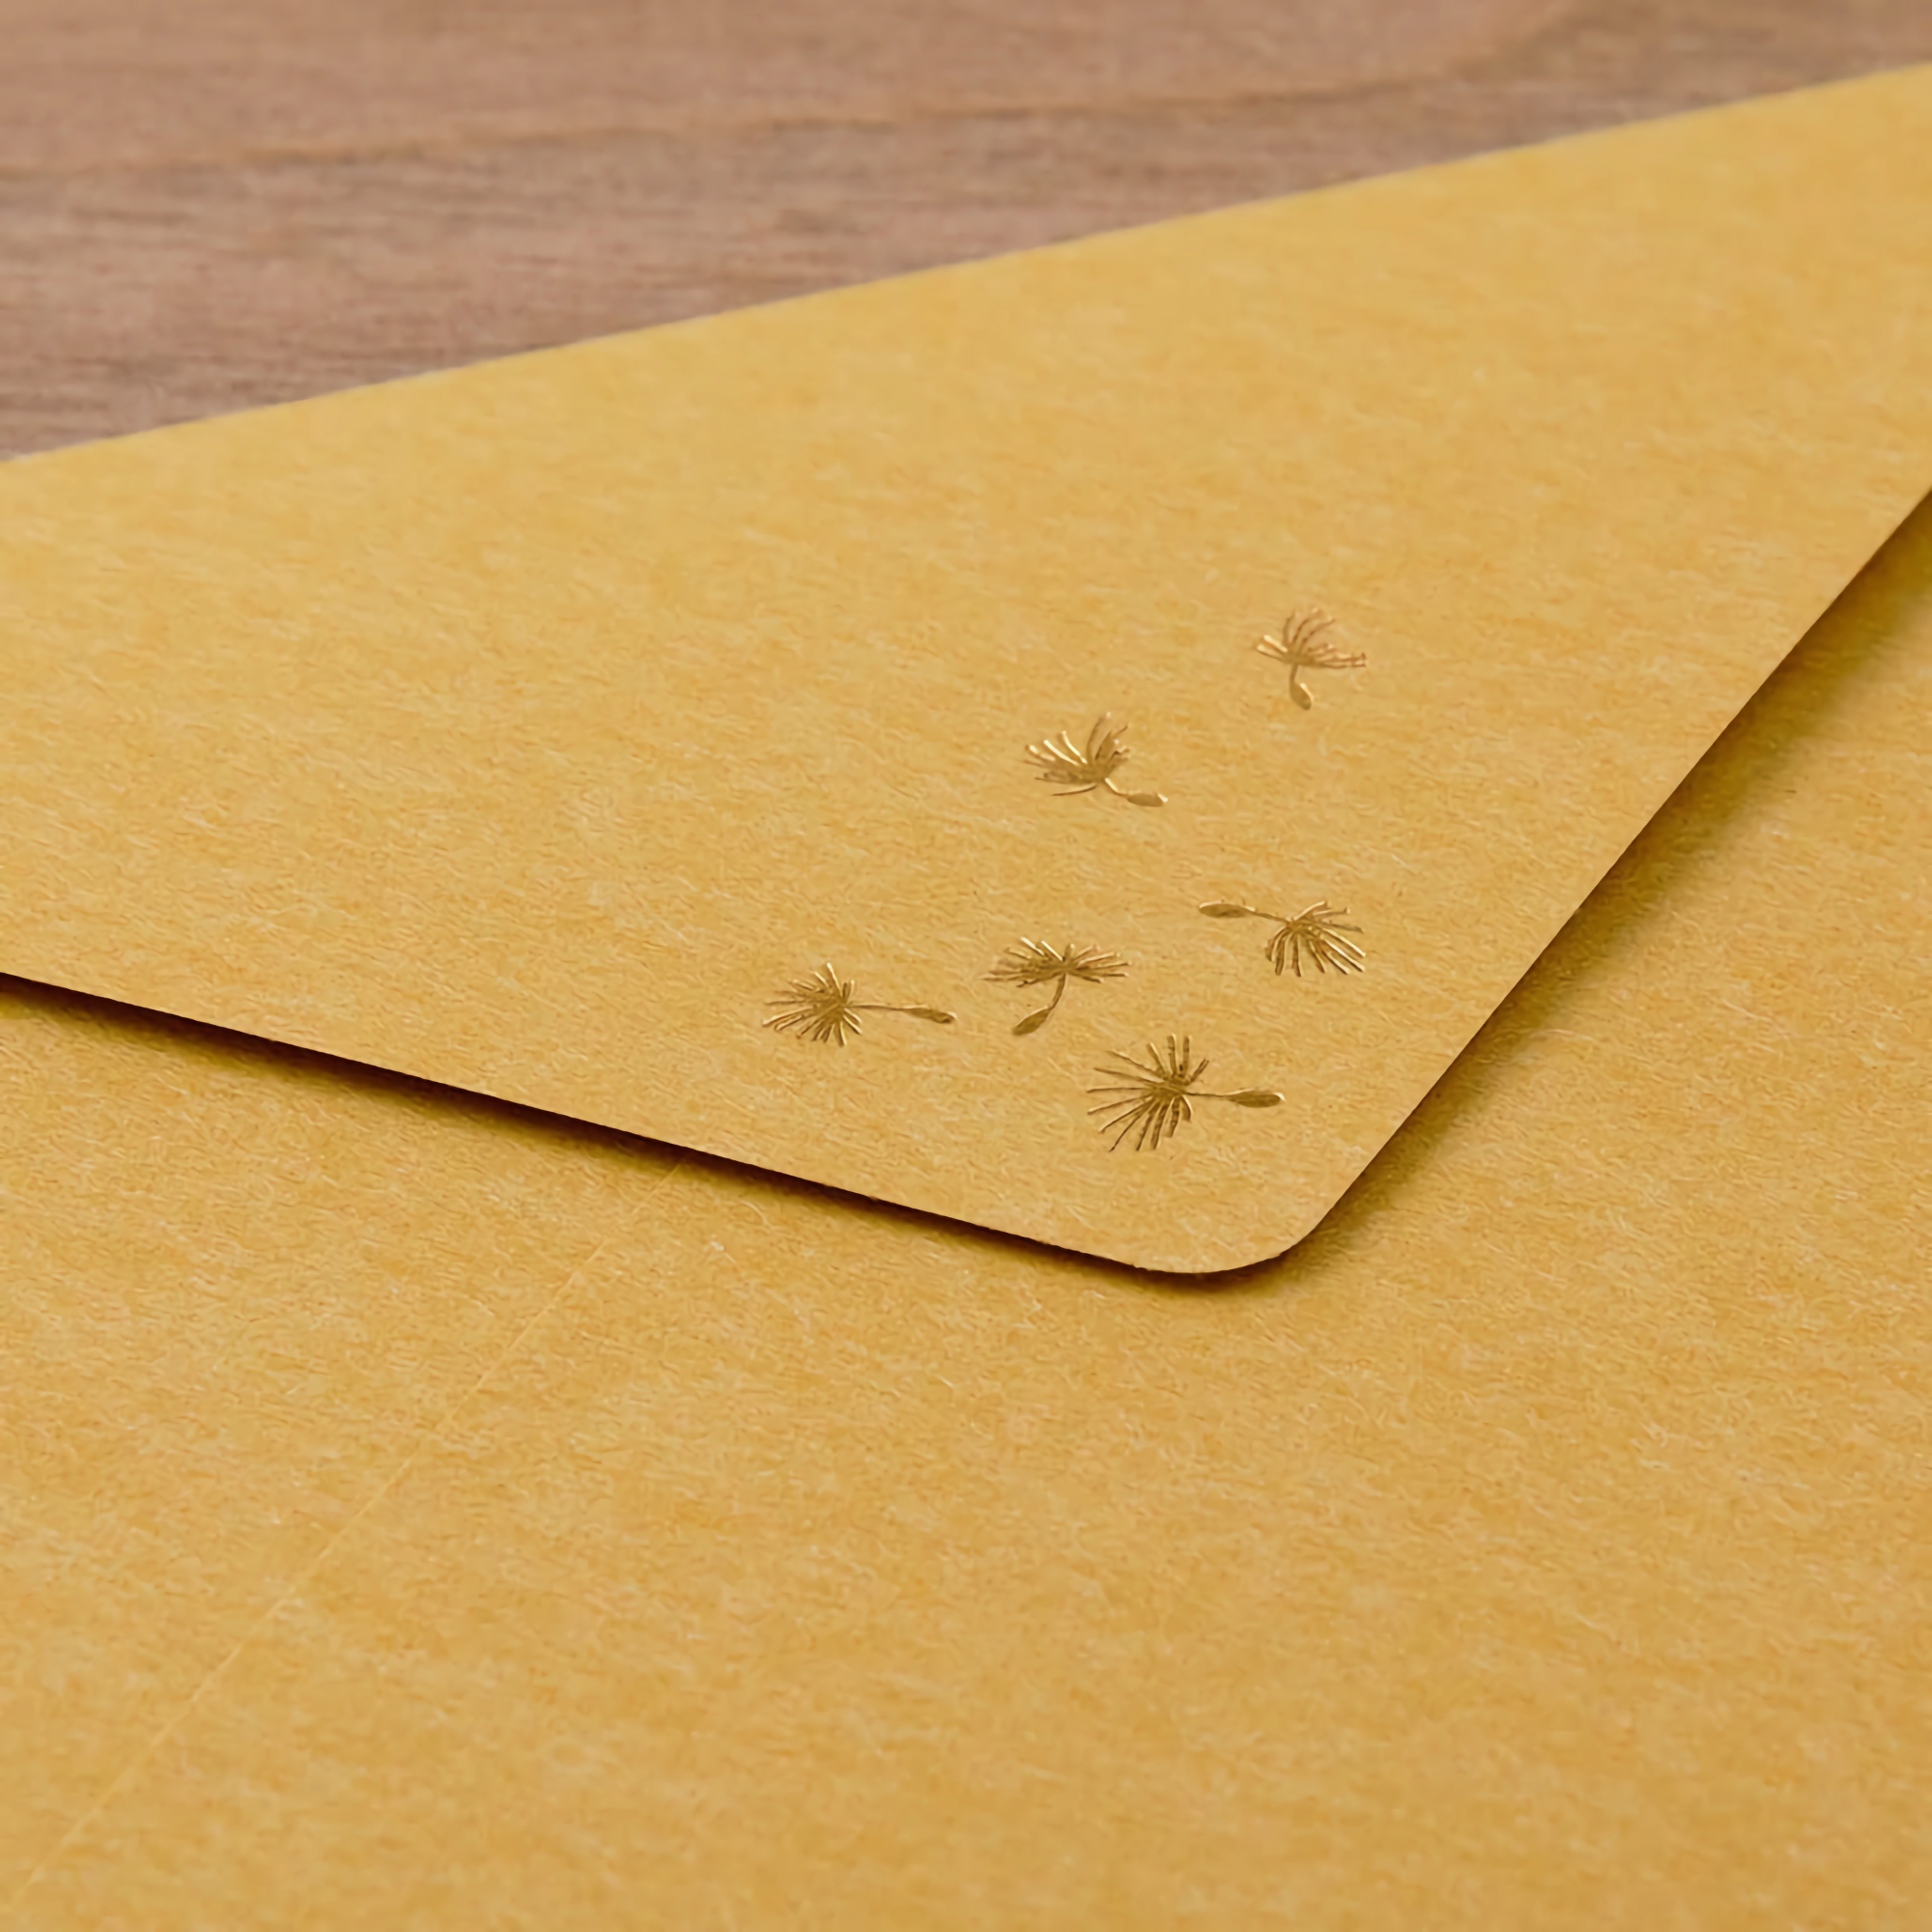 Midori Letter Set Foil-Stamped Envelopes Blowball